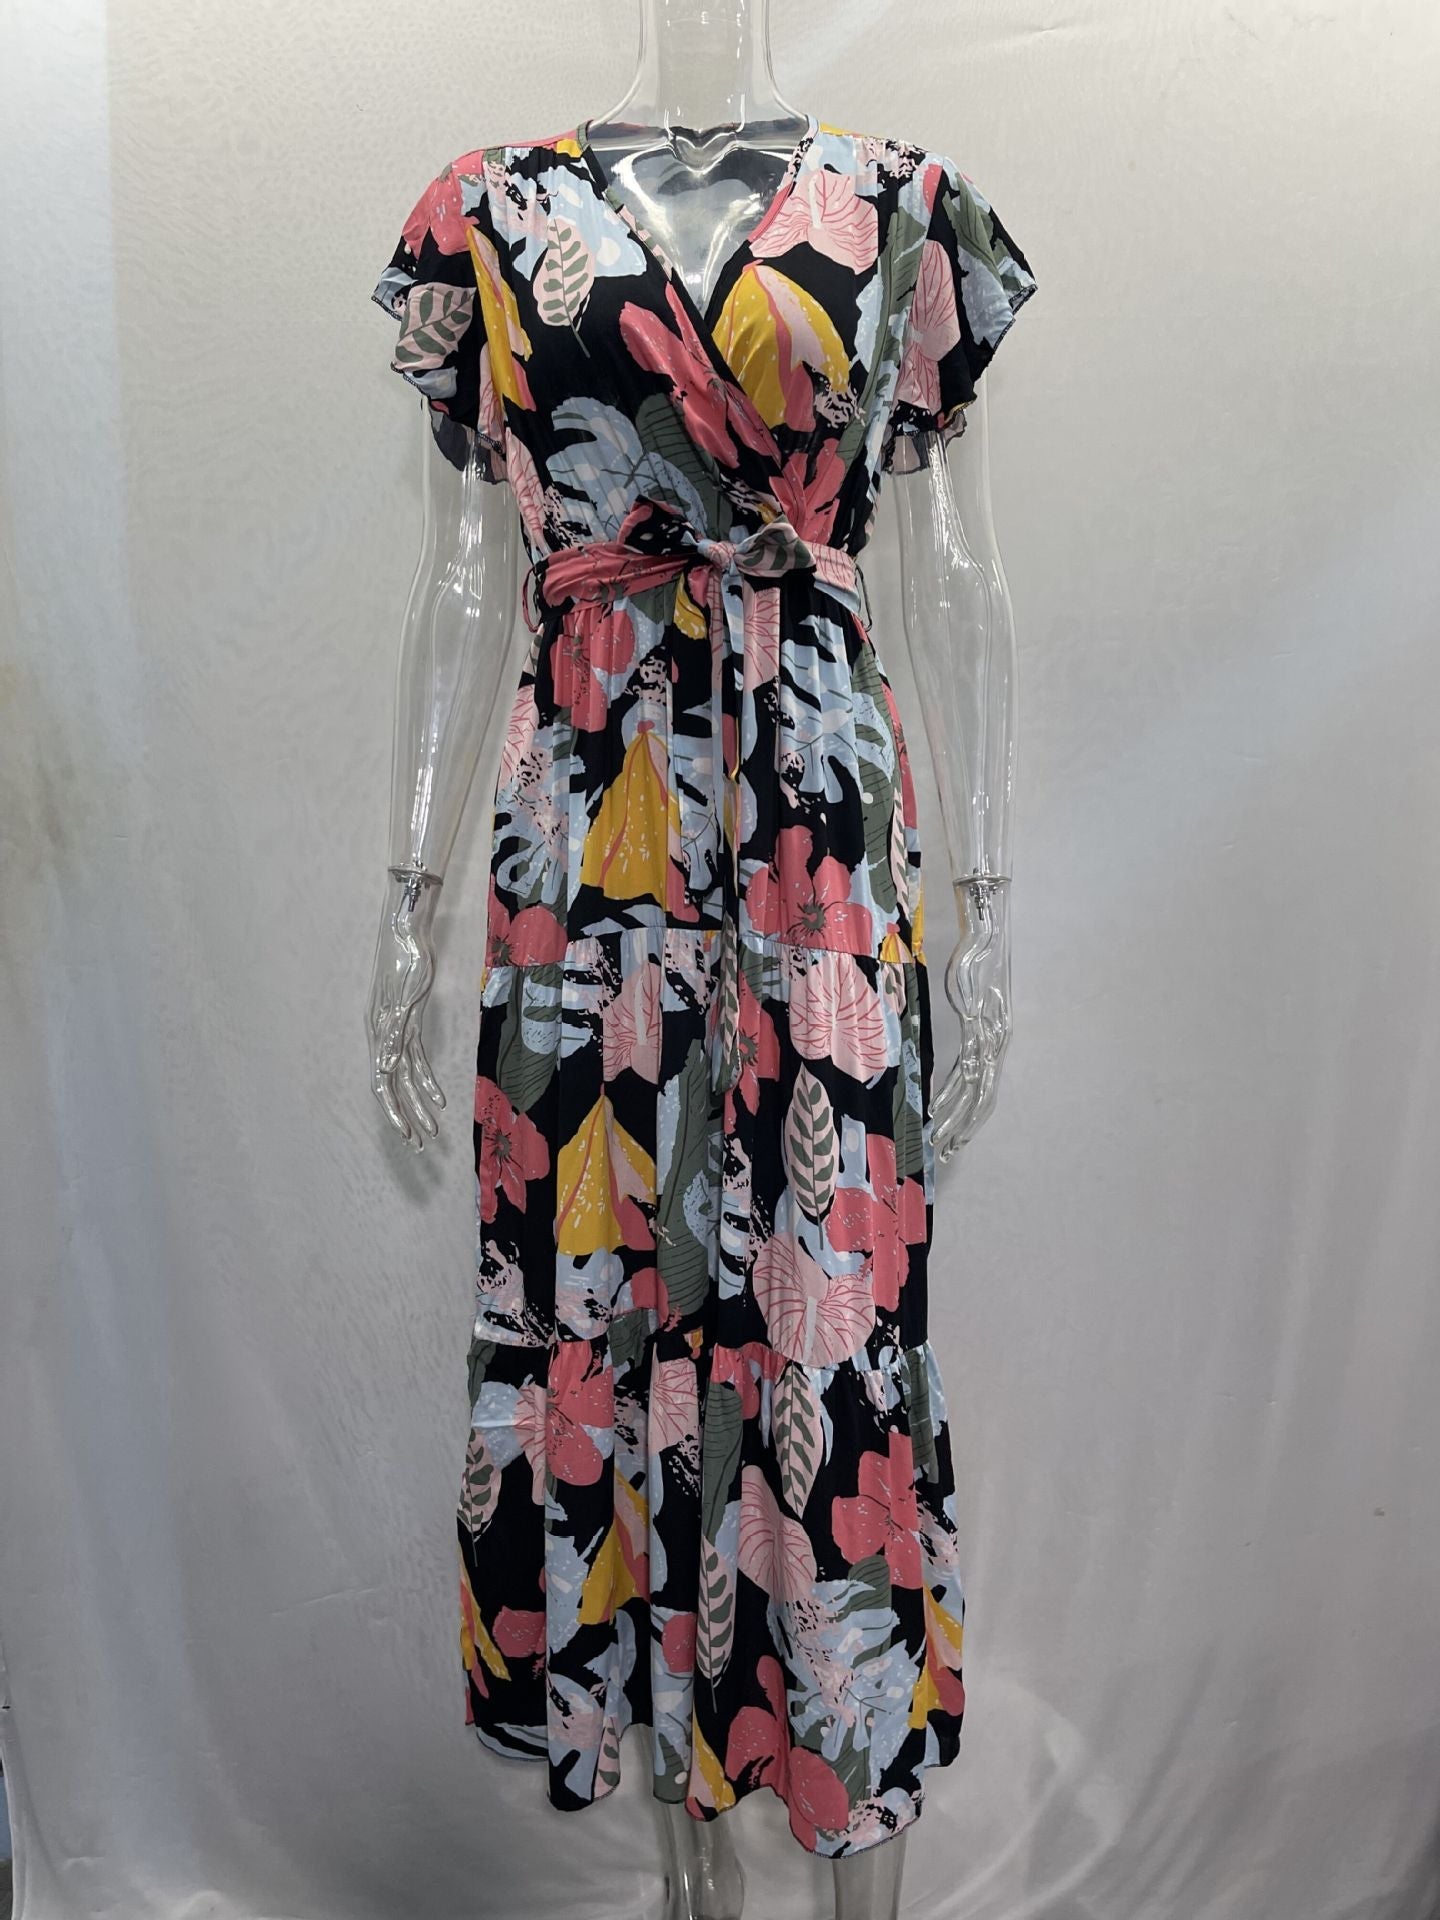 Floral Long Sleeve Cap Sleeve V Neck Maxi Dress